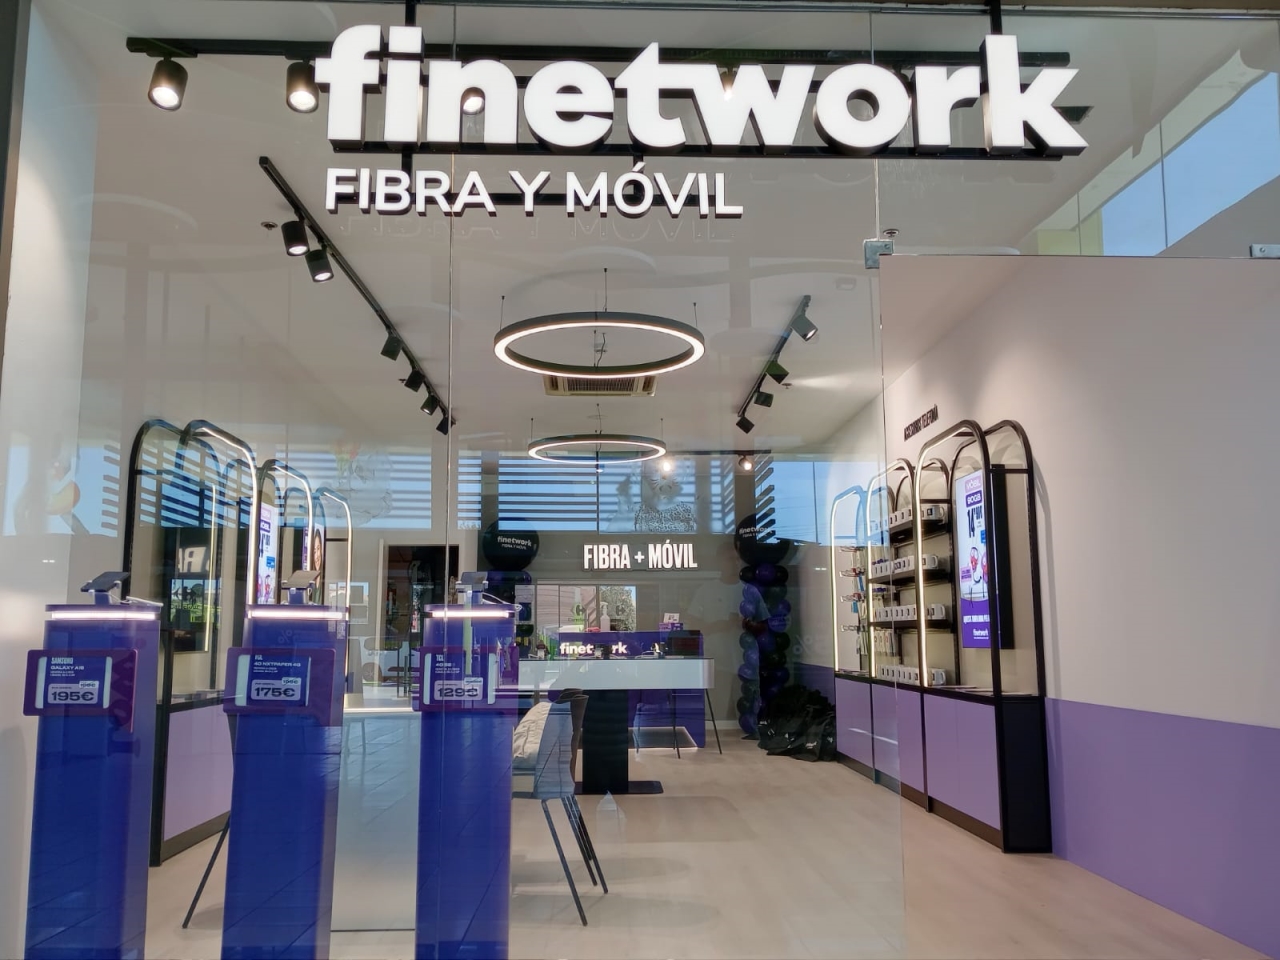 Finetwork acelera su crecimiento en Barcelona con 6 nuevas tiendas inauguradas en abril 